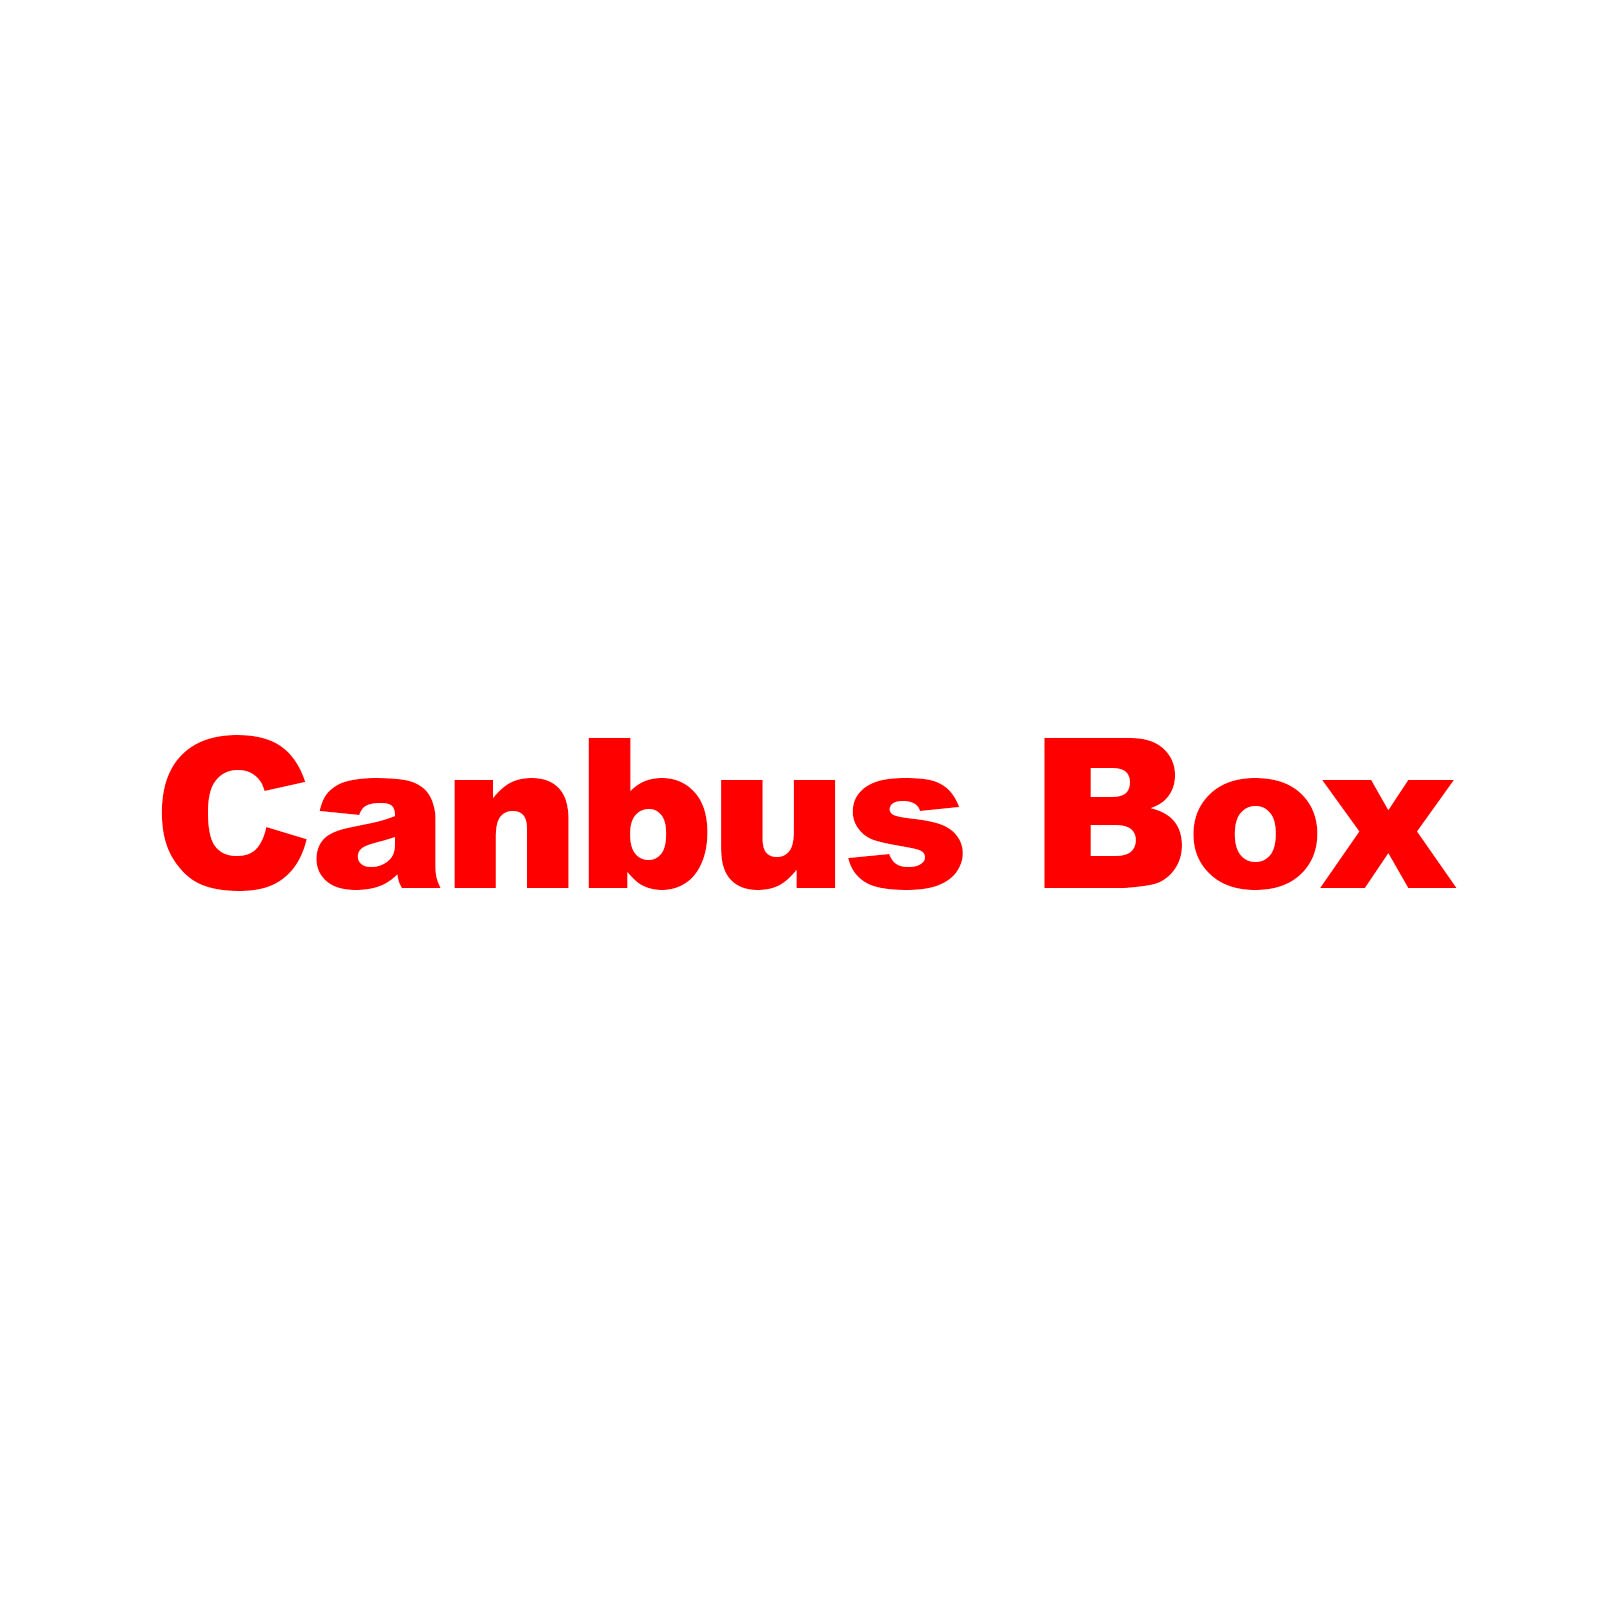 Optionele Canbus Box voor Klant die nodig, de item niet apart